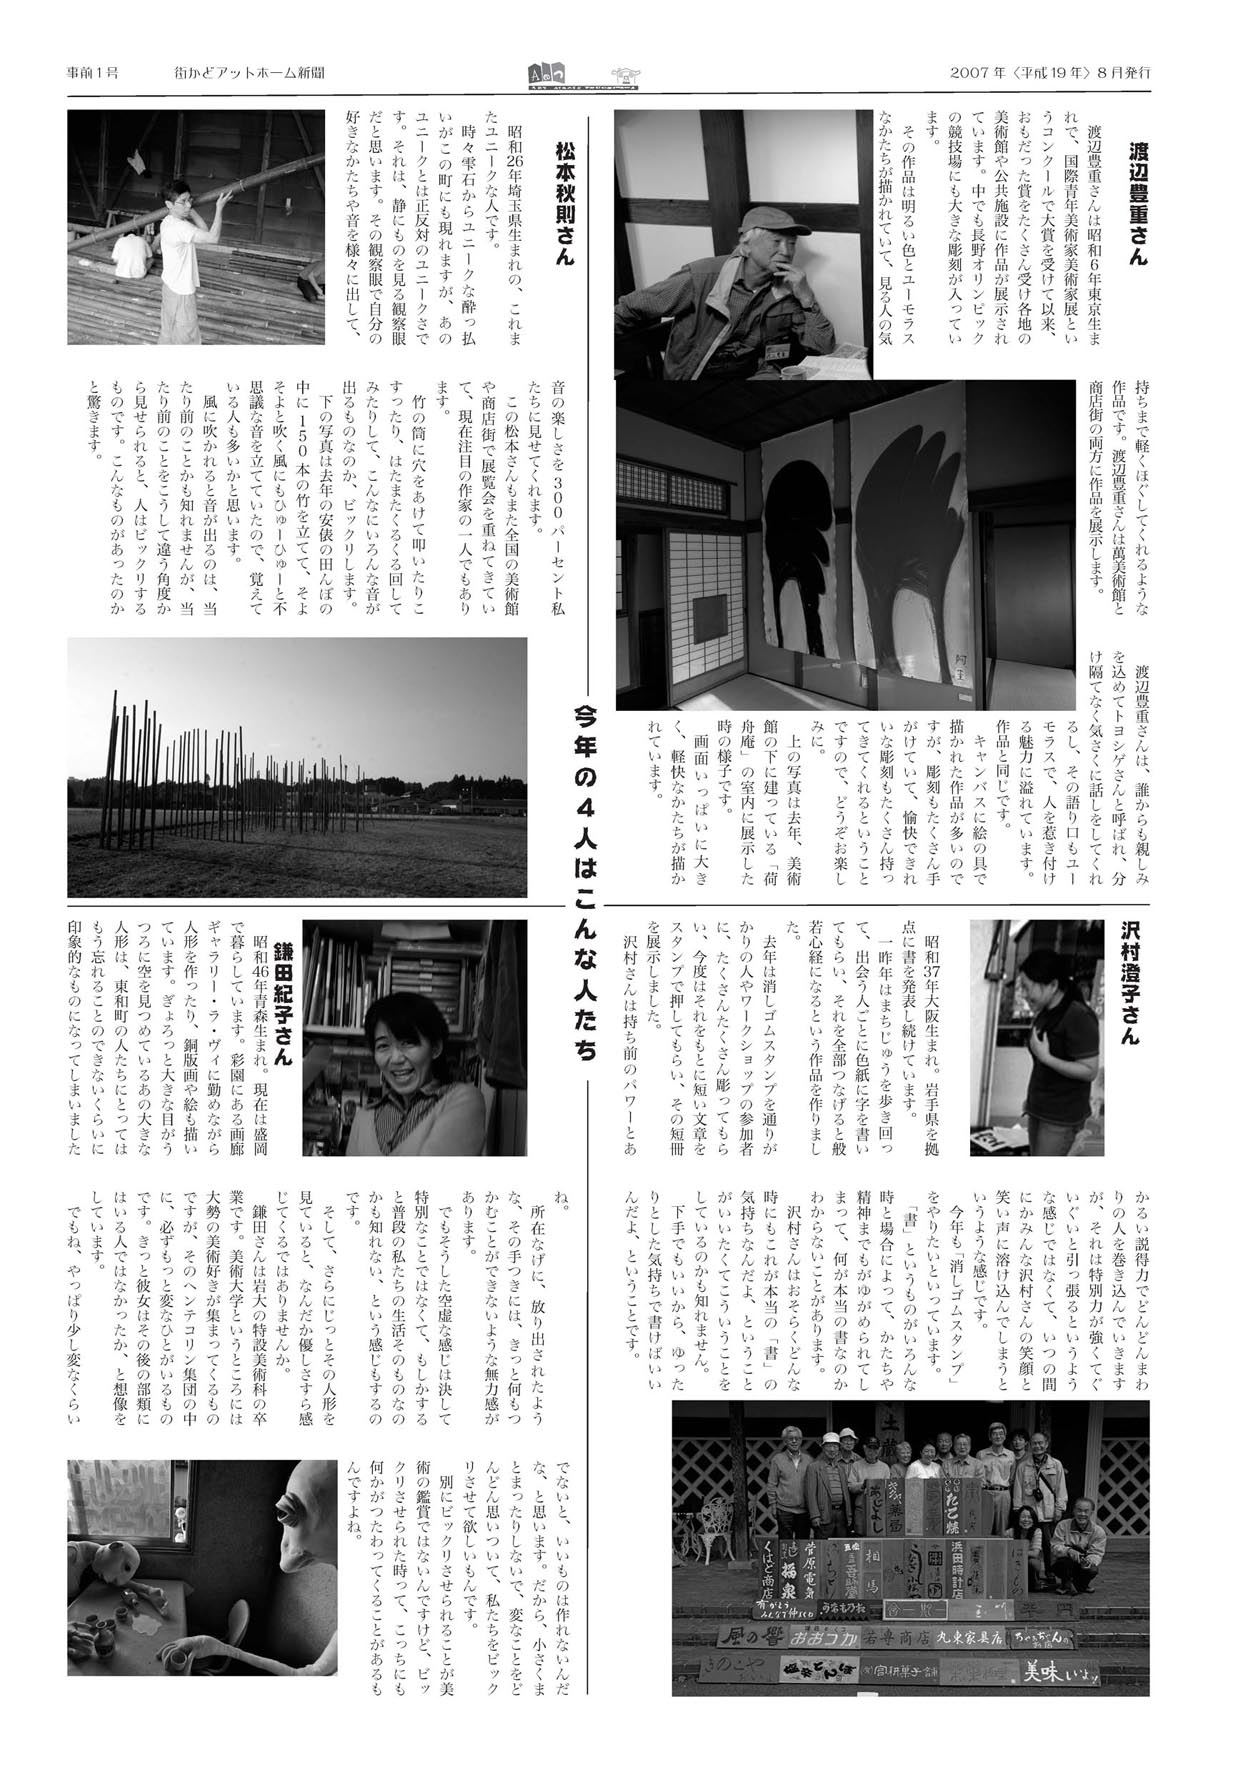 街かど新聞07_ページ2.jpg